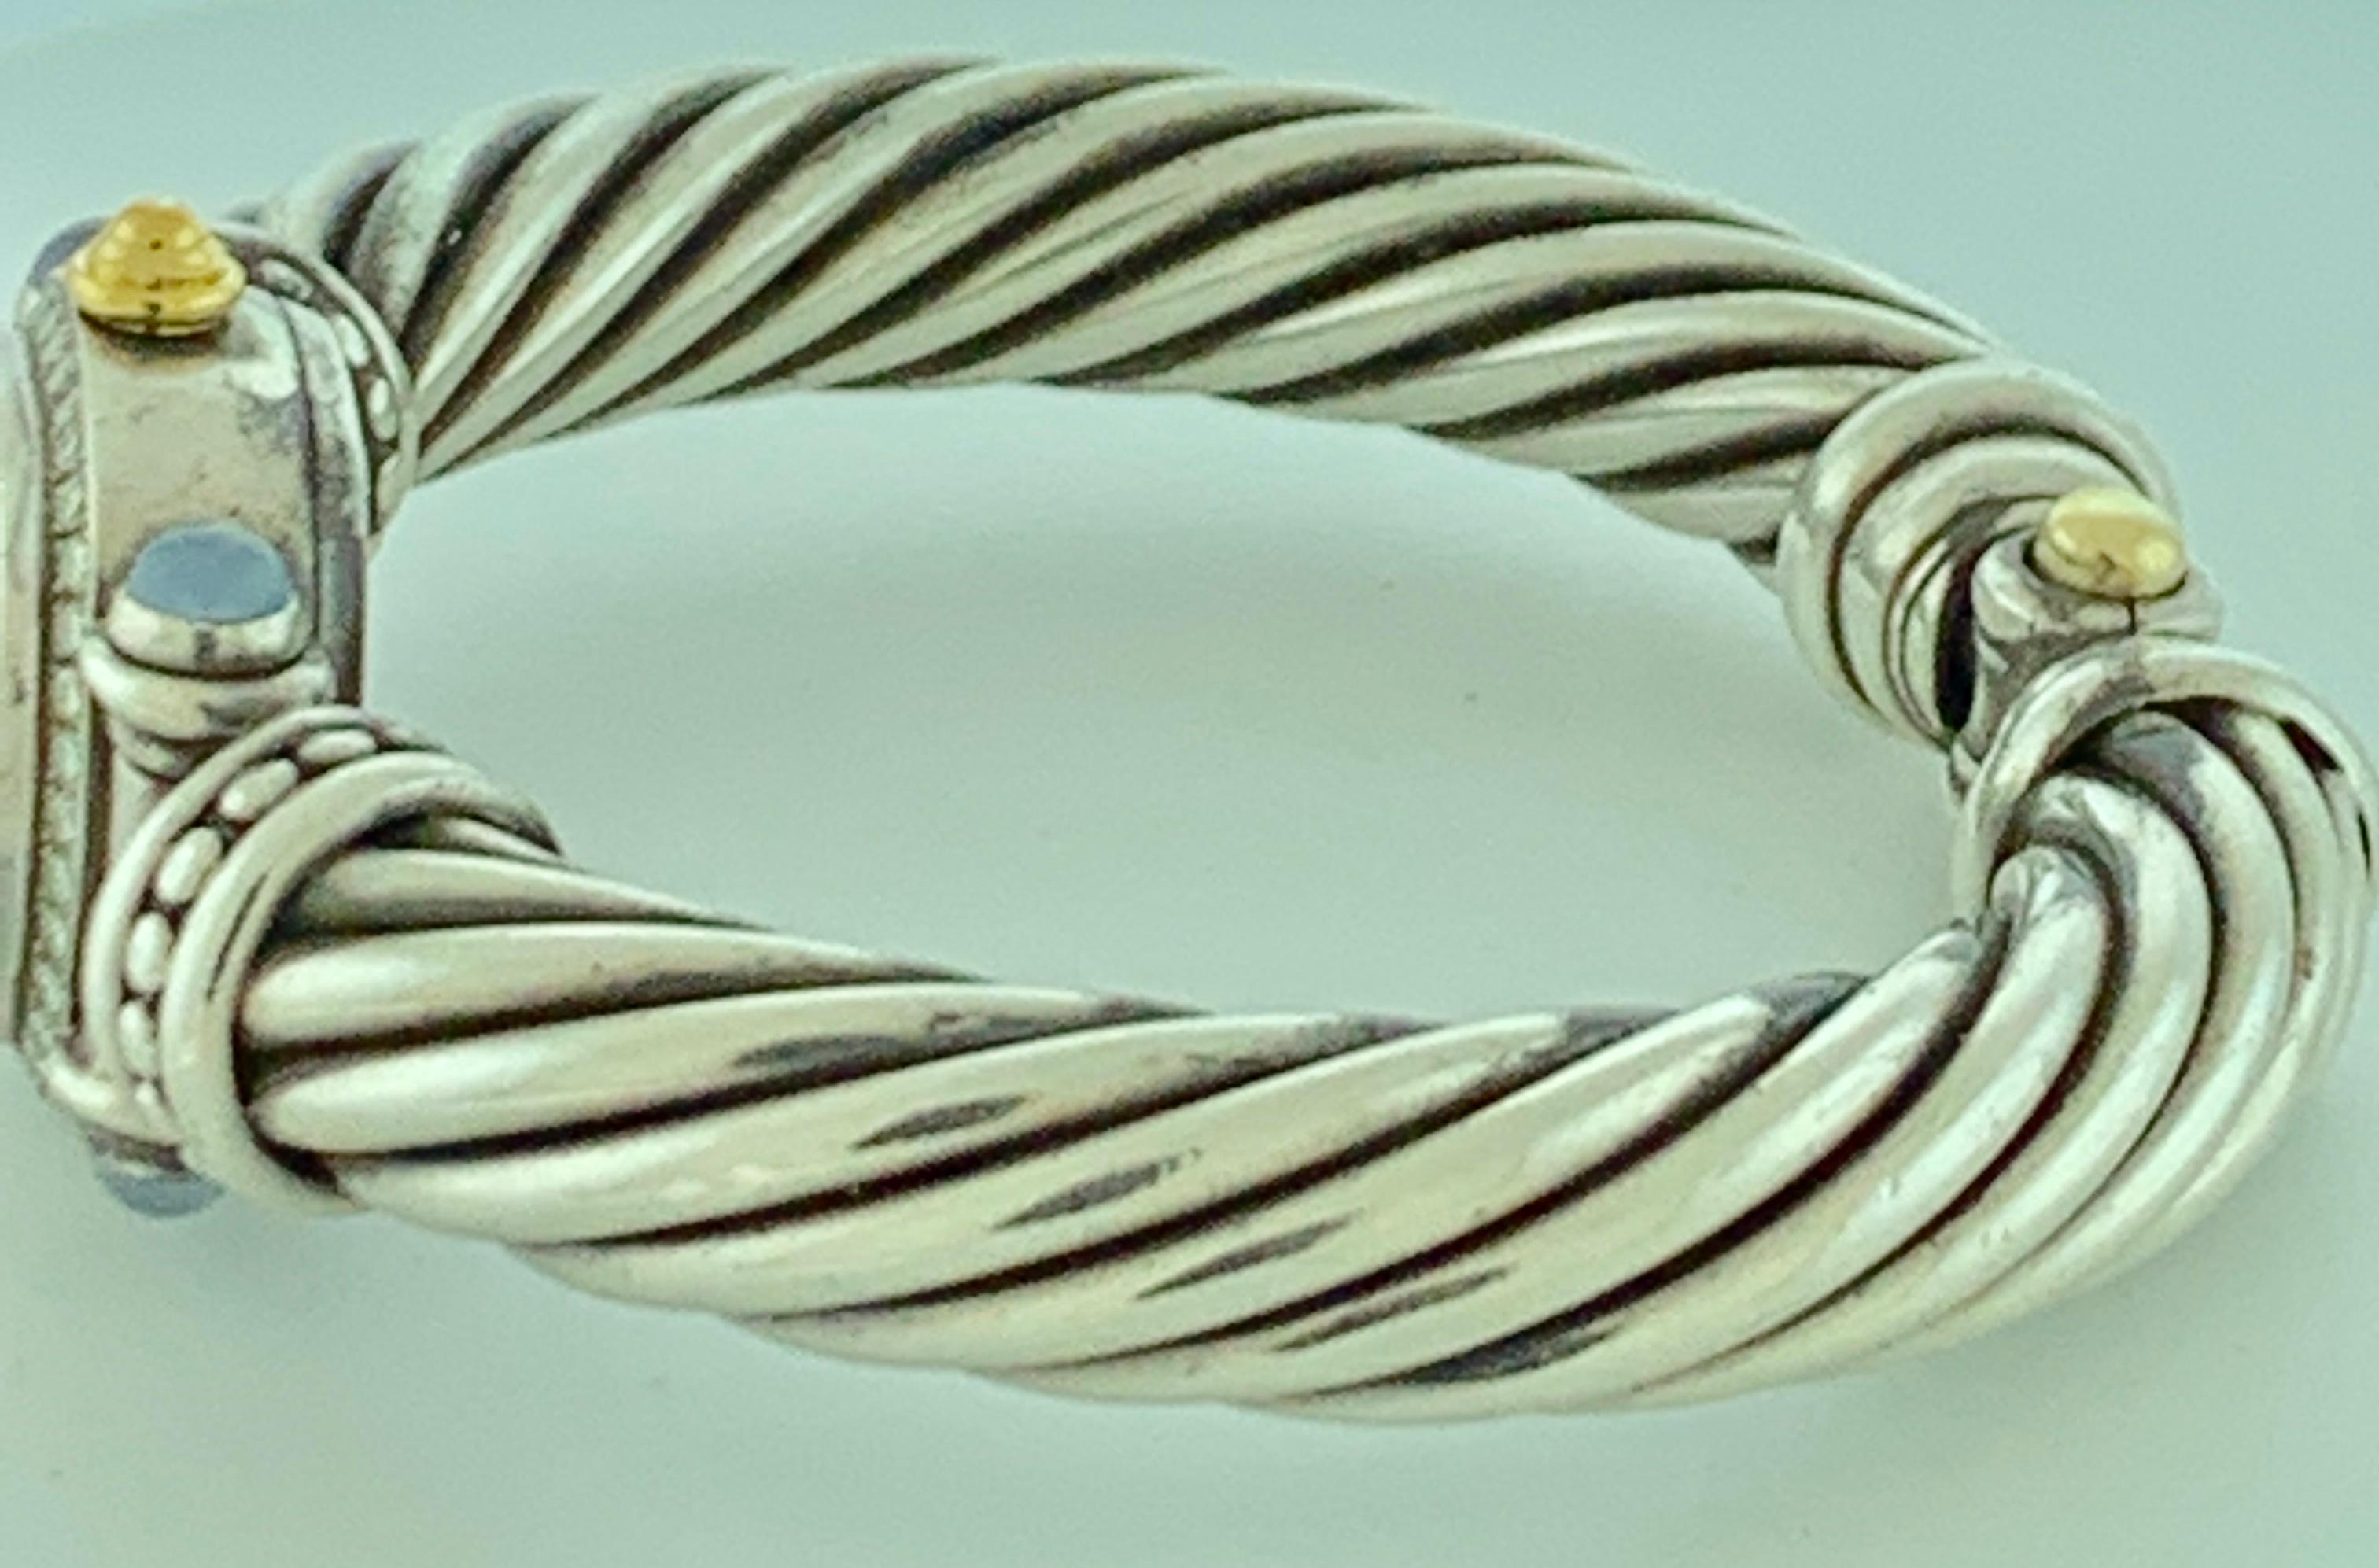 Women's David Yurman Bezel Diamond Watch Cable Bracelet Sterling Silver 14 Karat Gold